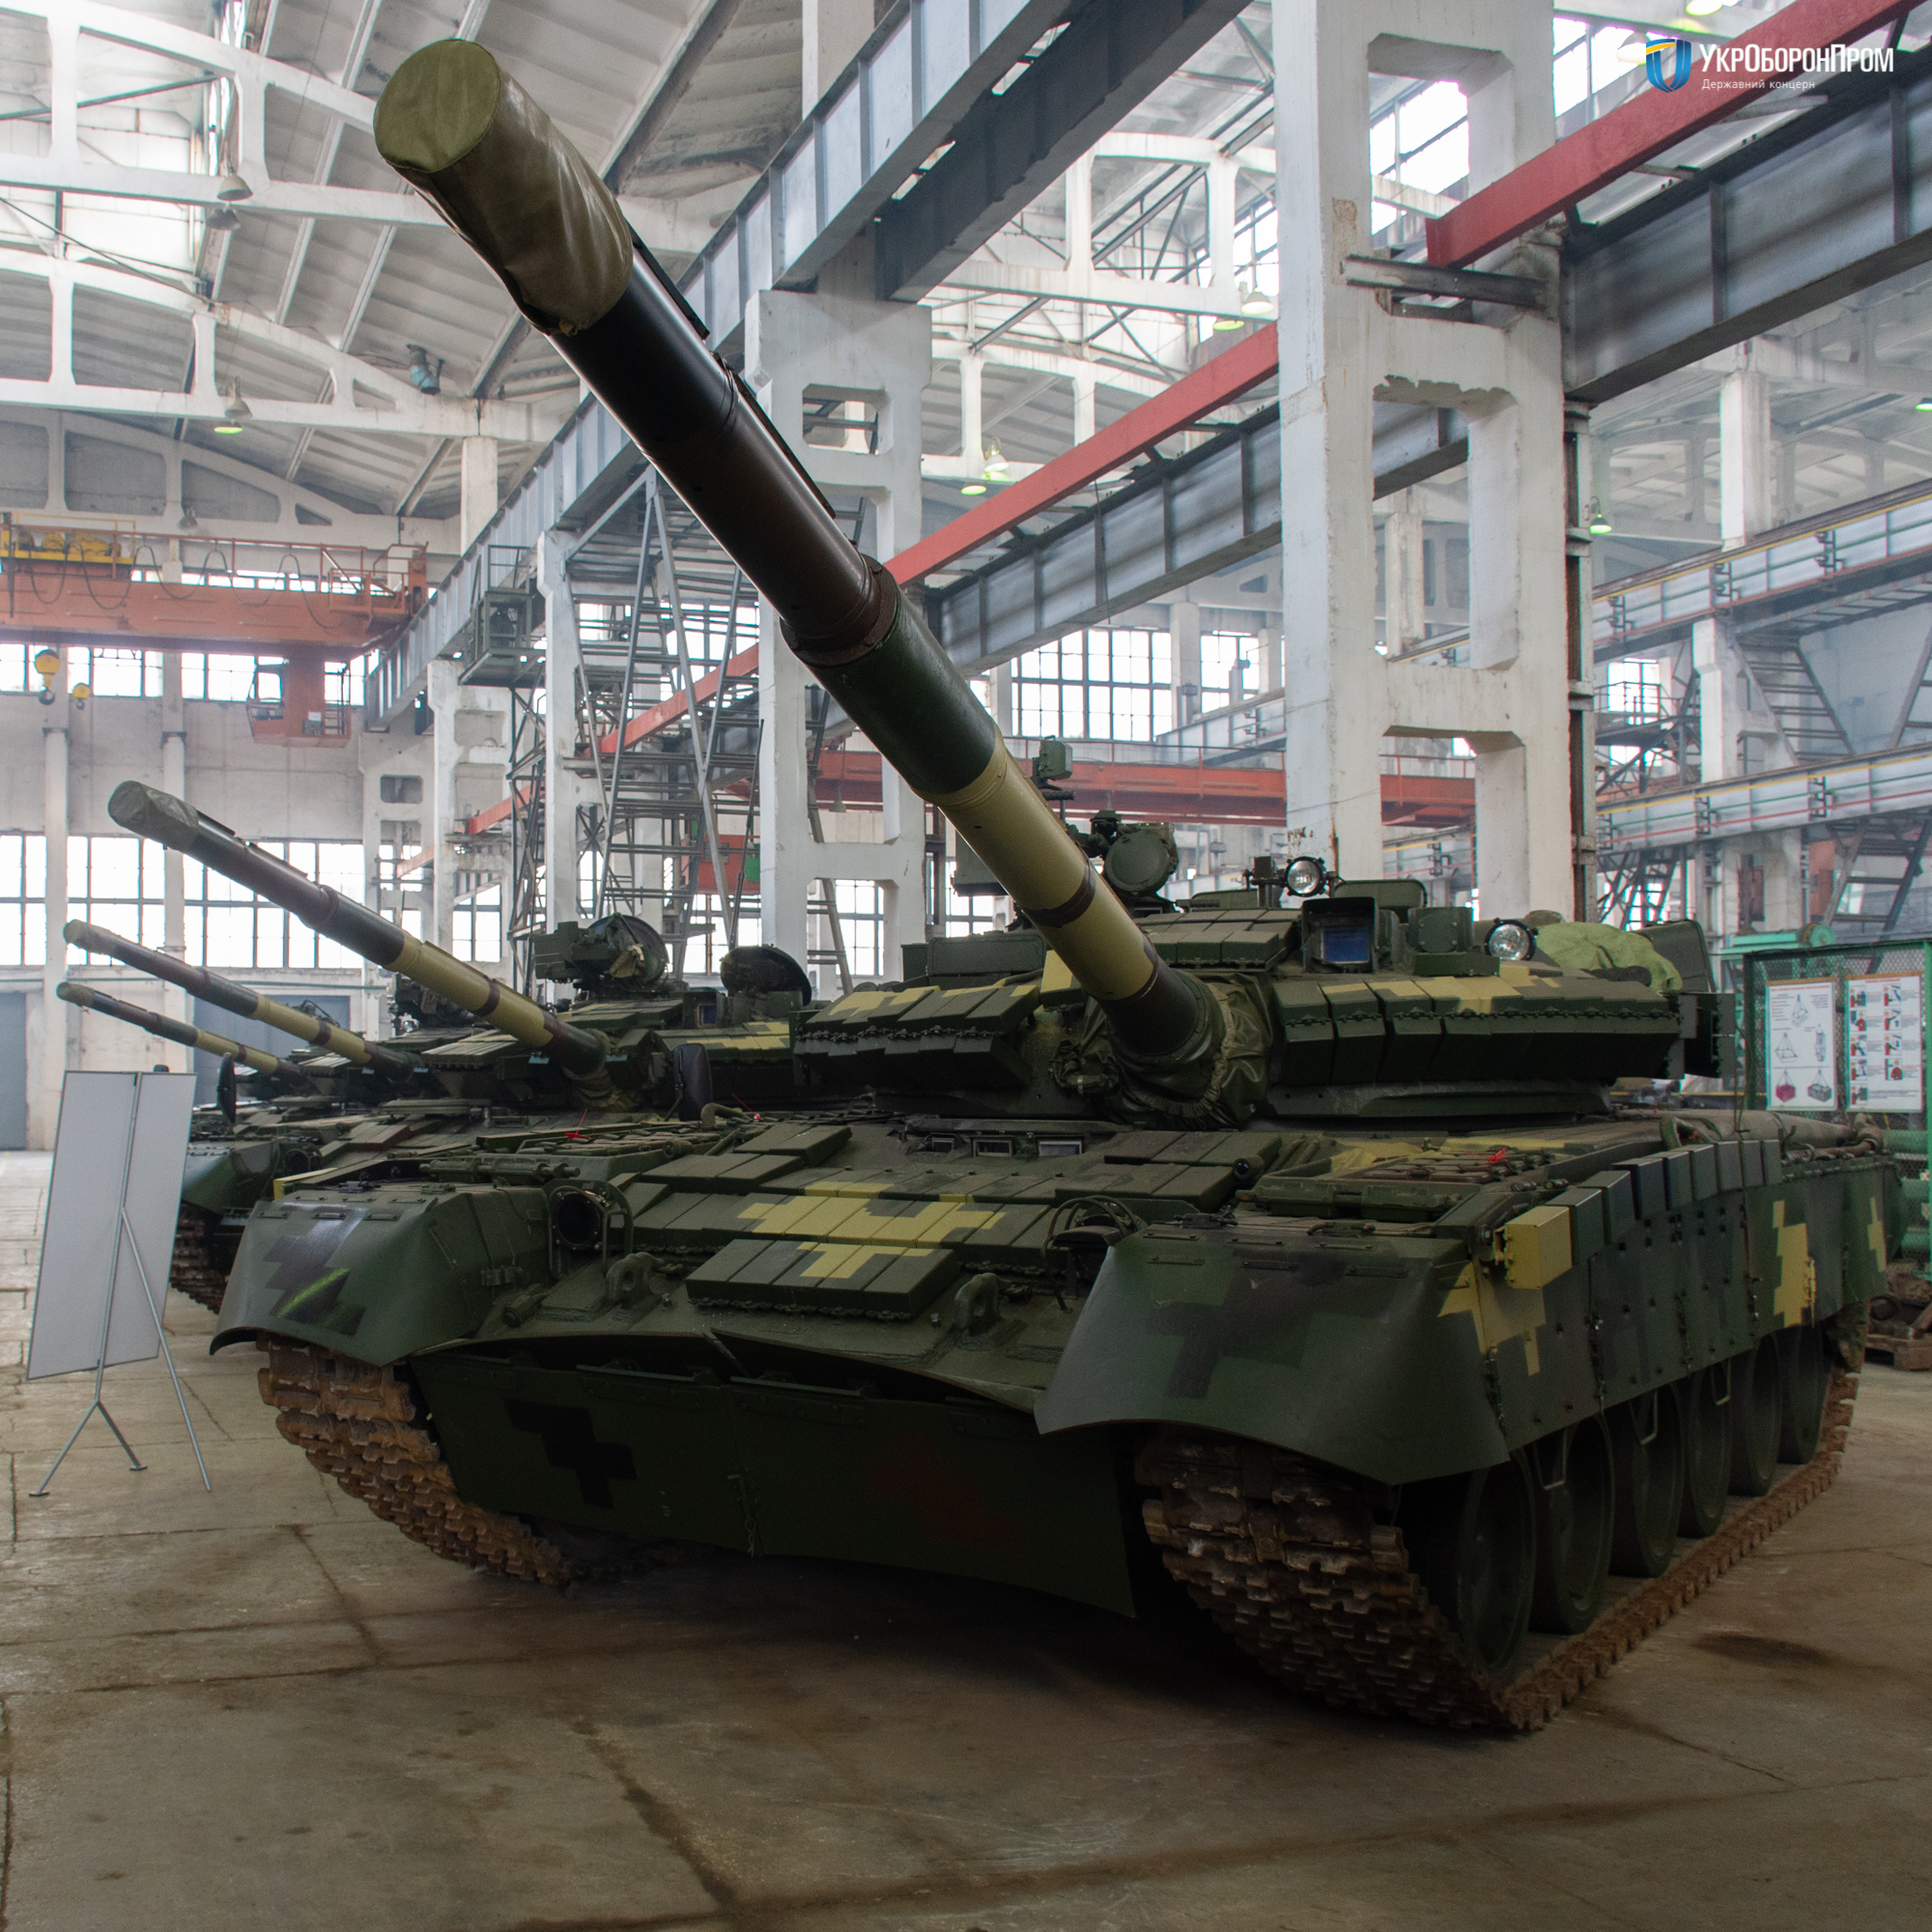 Партія модернізованих Т 80 для Збройних Сил України. 2019 рік. Фото: Укроборонпром